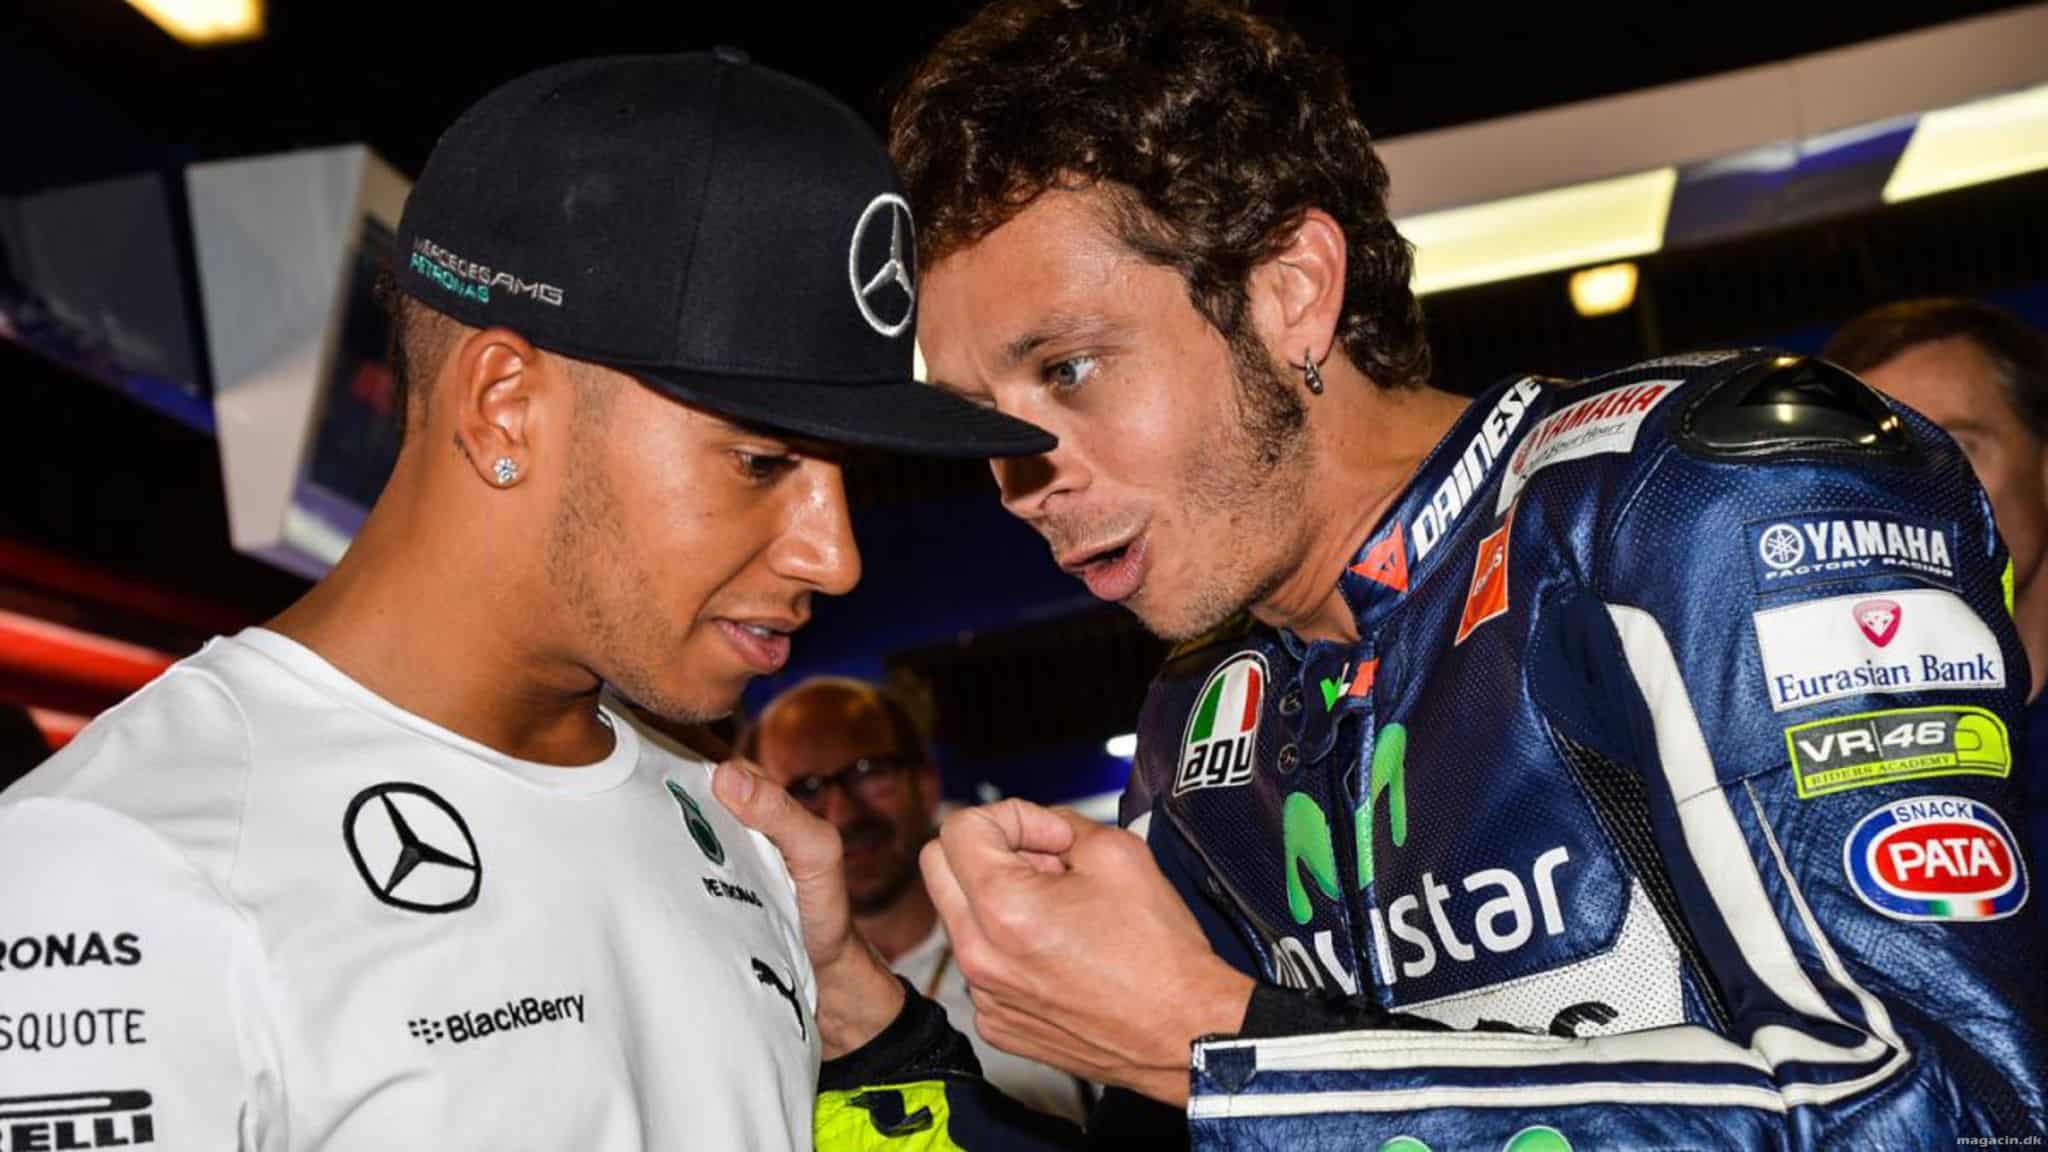 Hamiltons styrt får konsekvenser - køretimer af Rossi